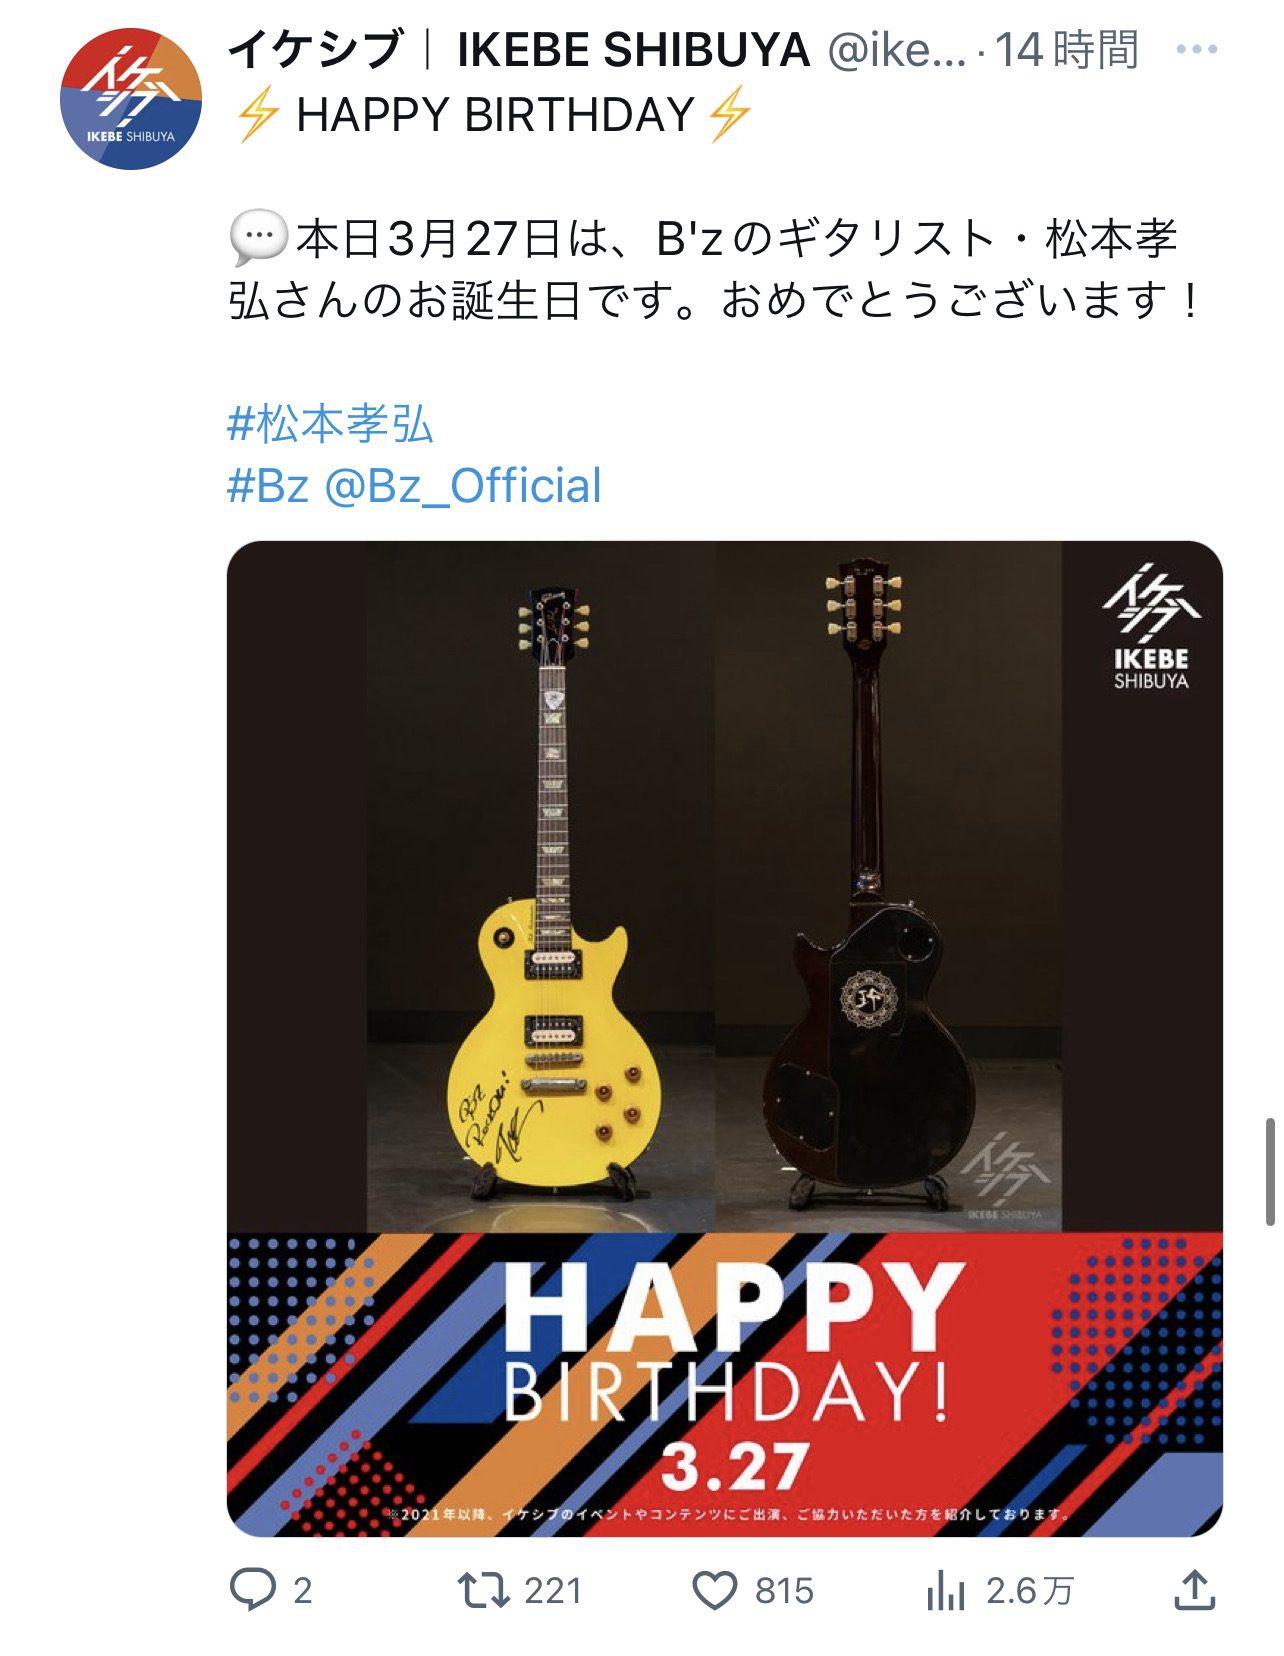 イケシブがB'z松本孝弘の62歳誕生日を祝したTwitter投稿